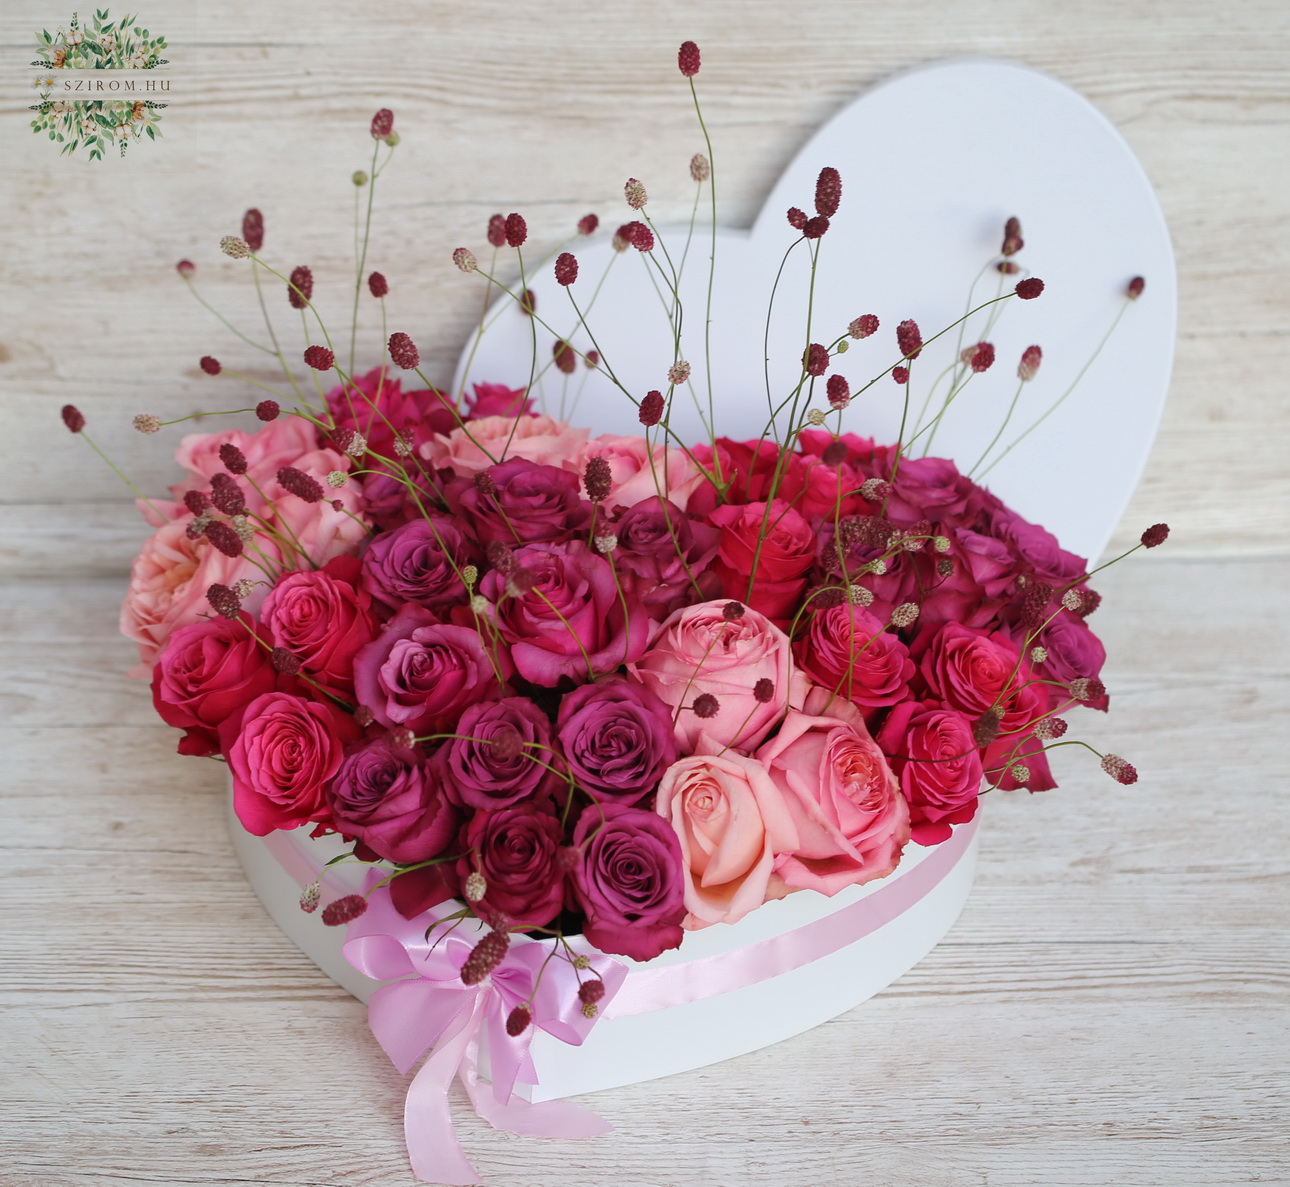 Blumenlieferung nach Budapest - Romantische Rosenbox mit 40 Rosen